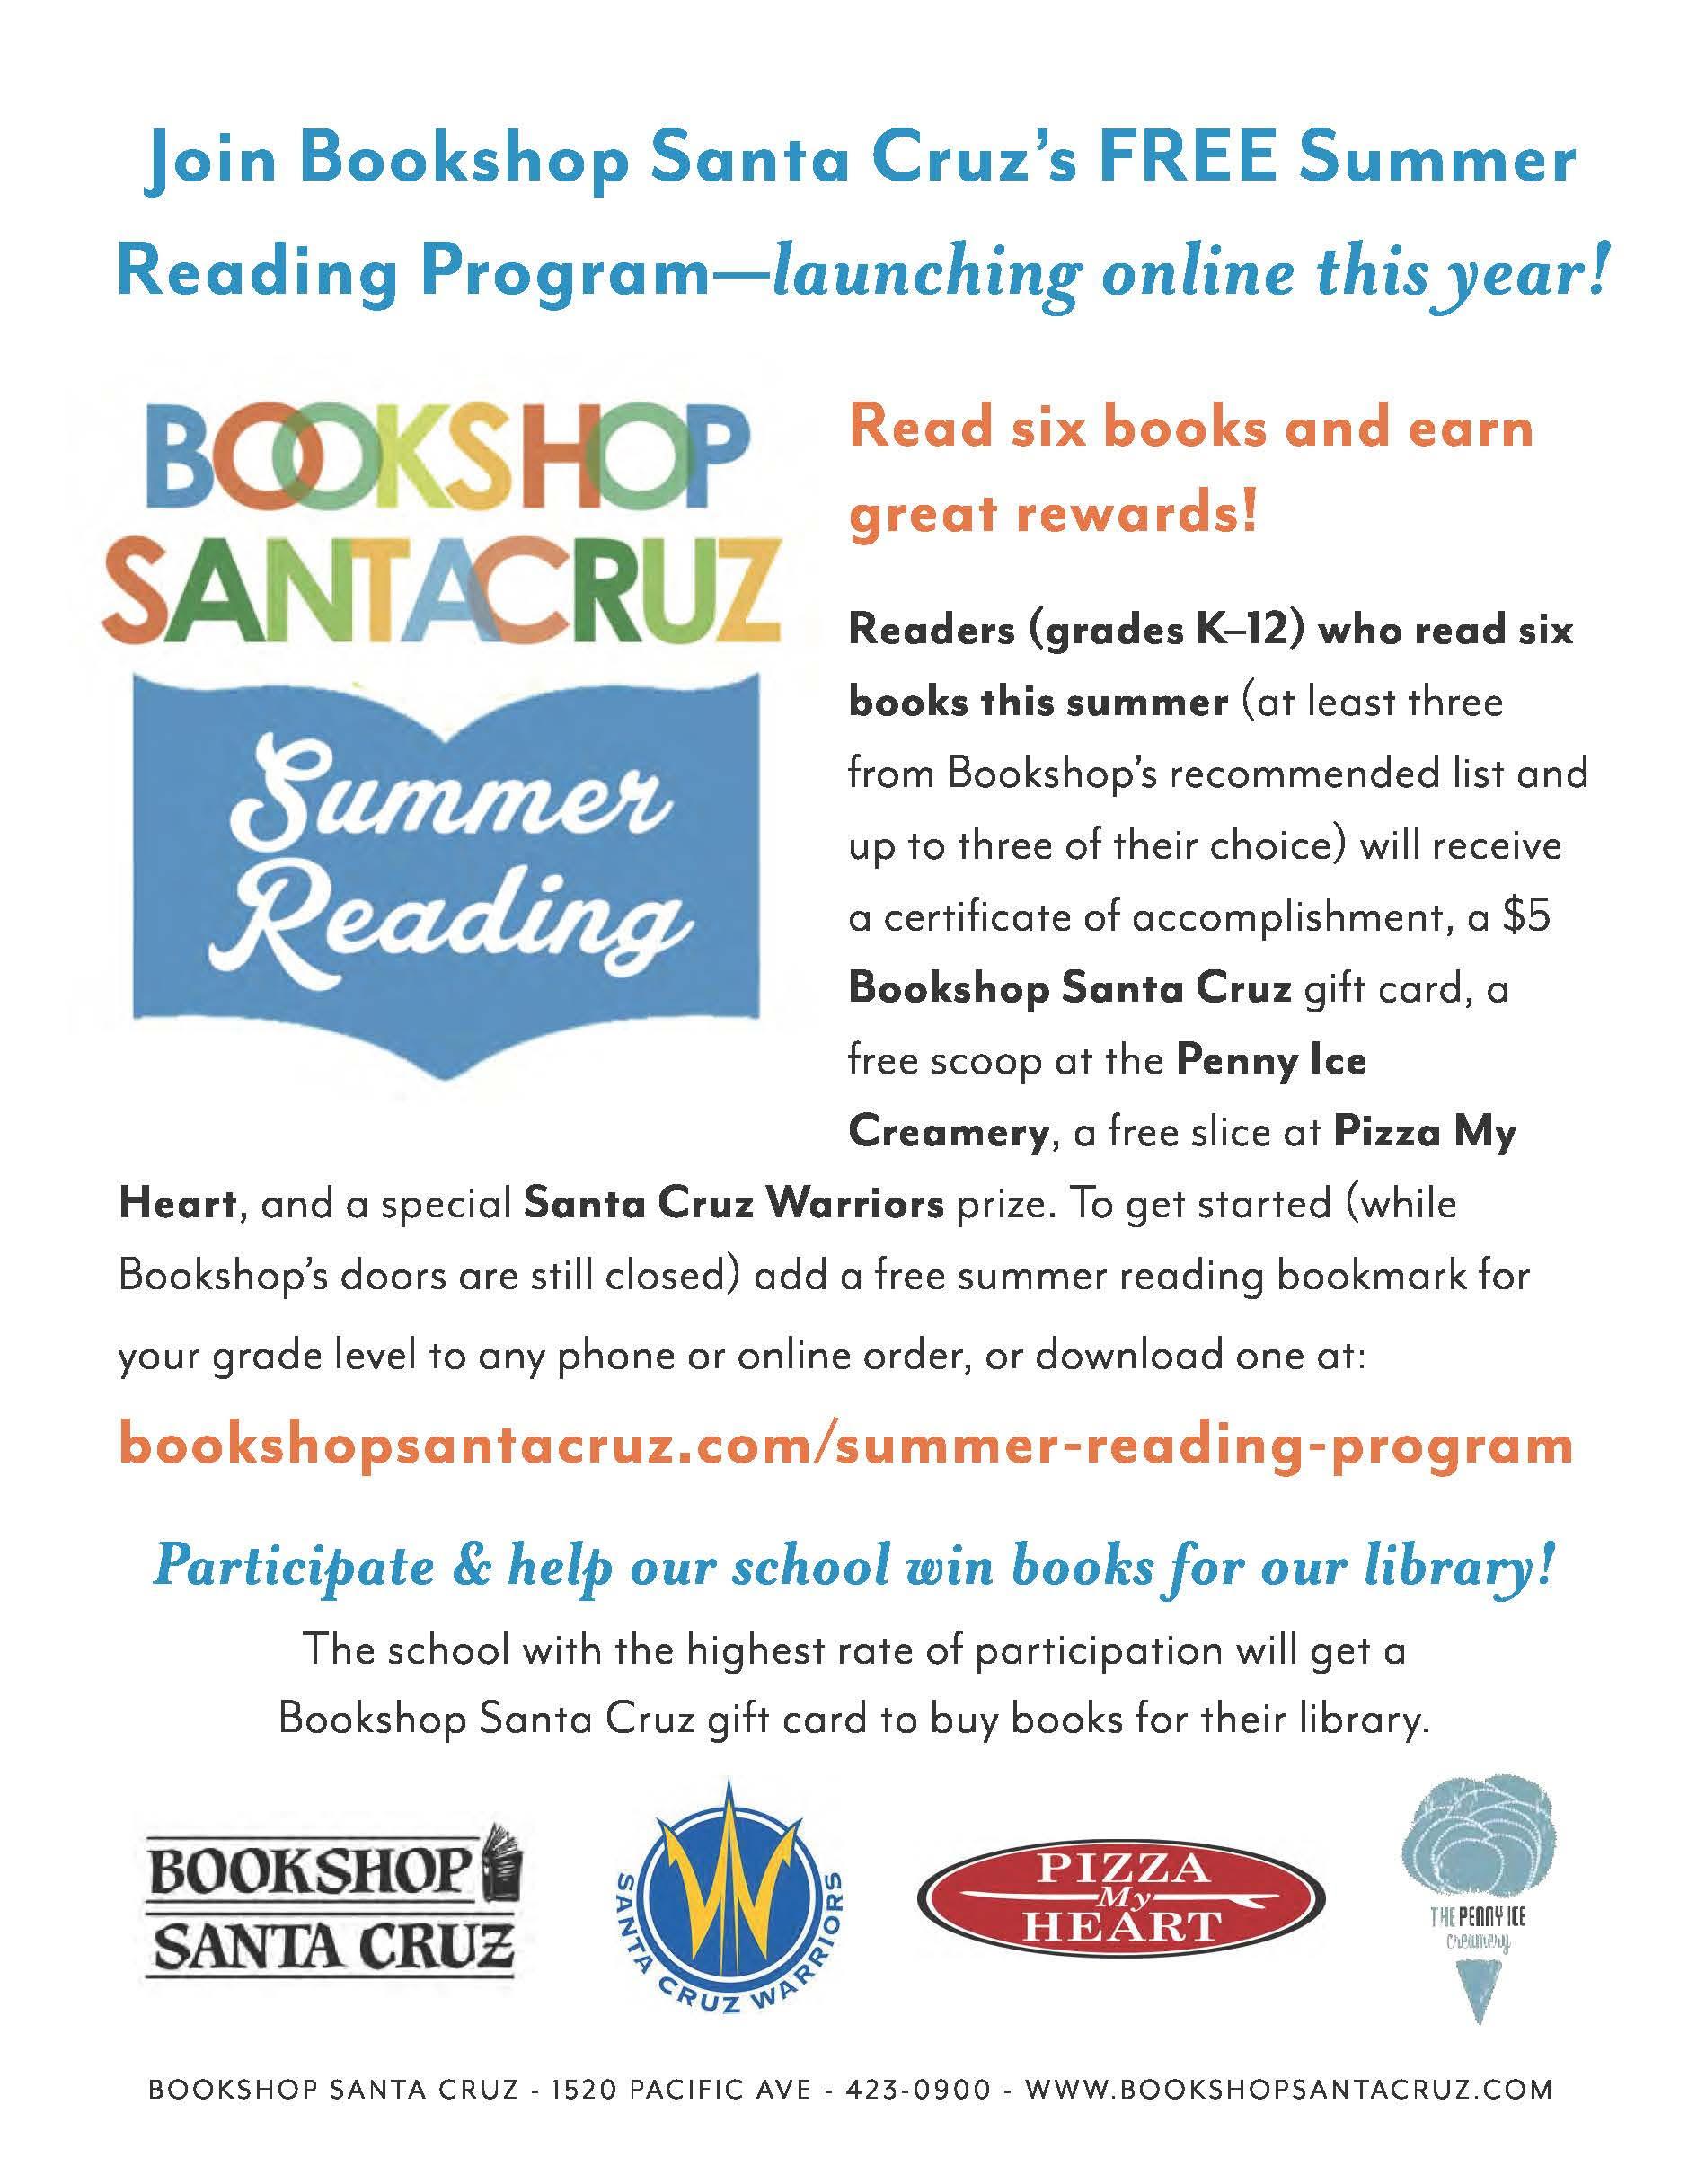 Summer Reading Program flyer; visit bookshopsantacruz.com/summer-reading-program for information